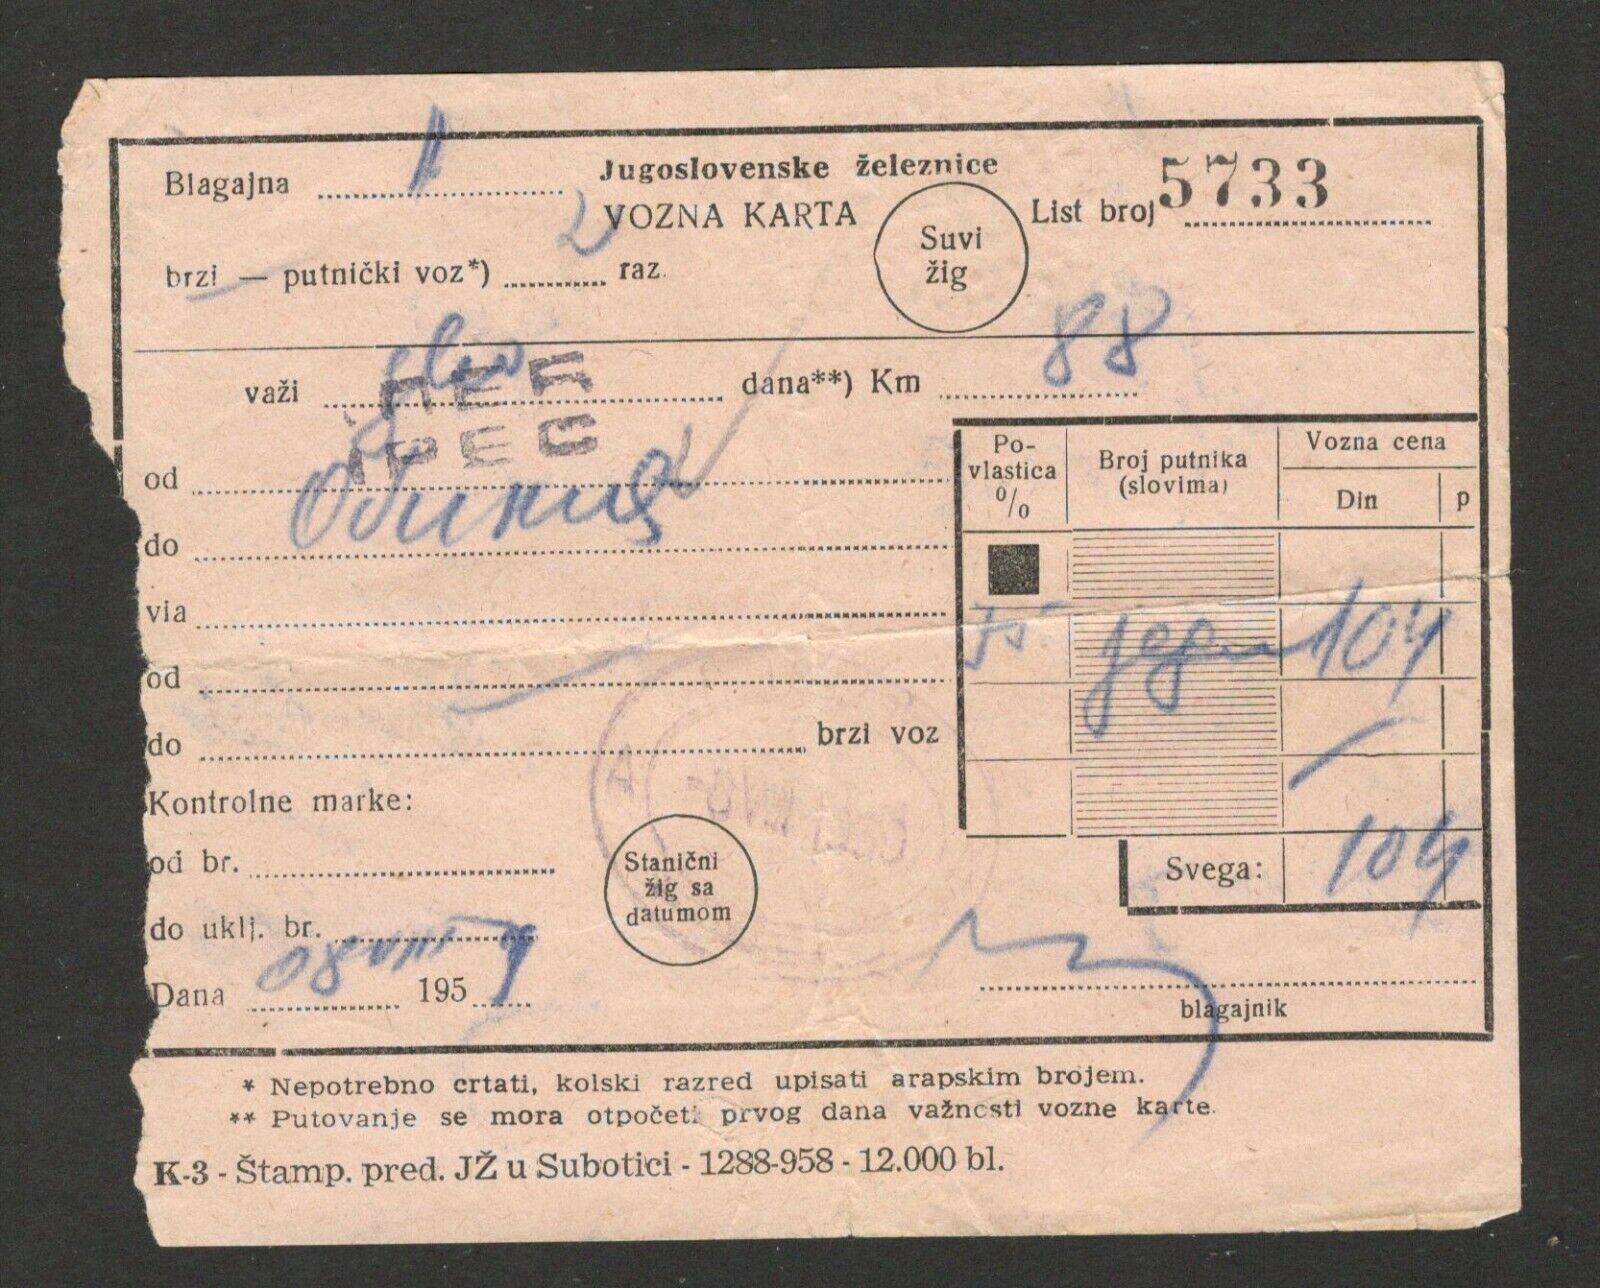 YUGOSLAVIA -KOSOVO  -RAILWAY TICKET - PEC TO OBILIC - 1950.